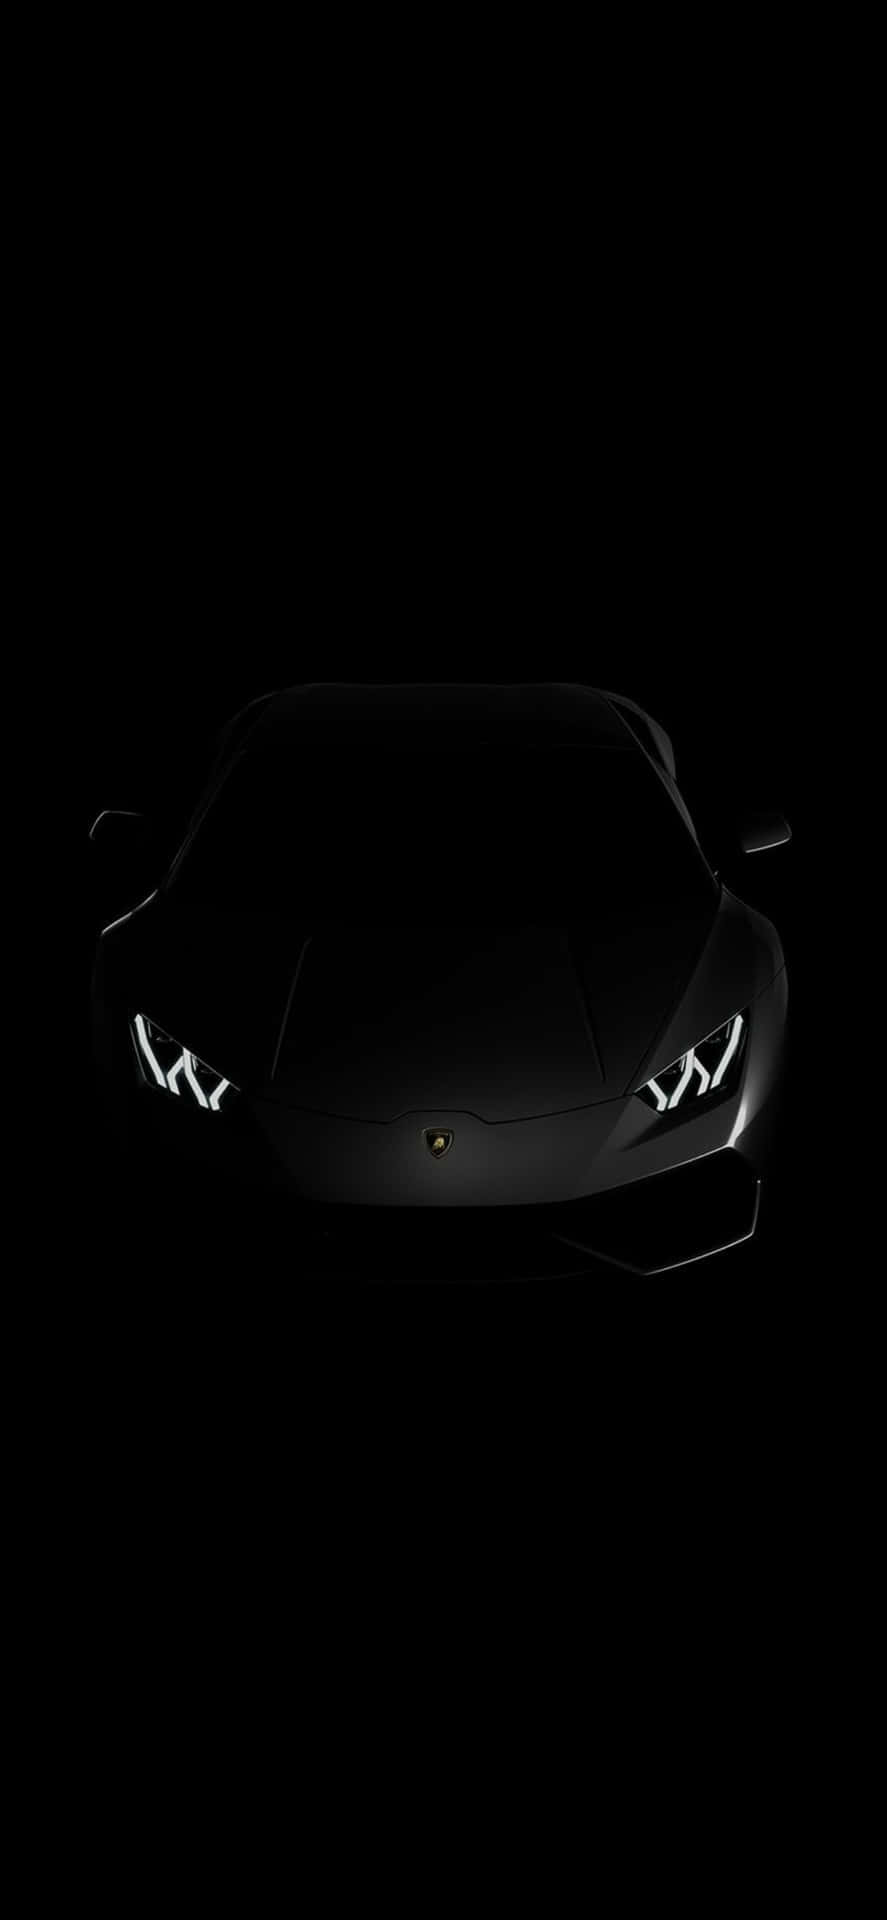 Sbloccail Lusso E La Potenza Della Lamborghini Con L'iphone X.